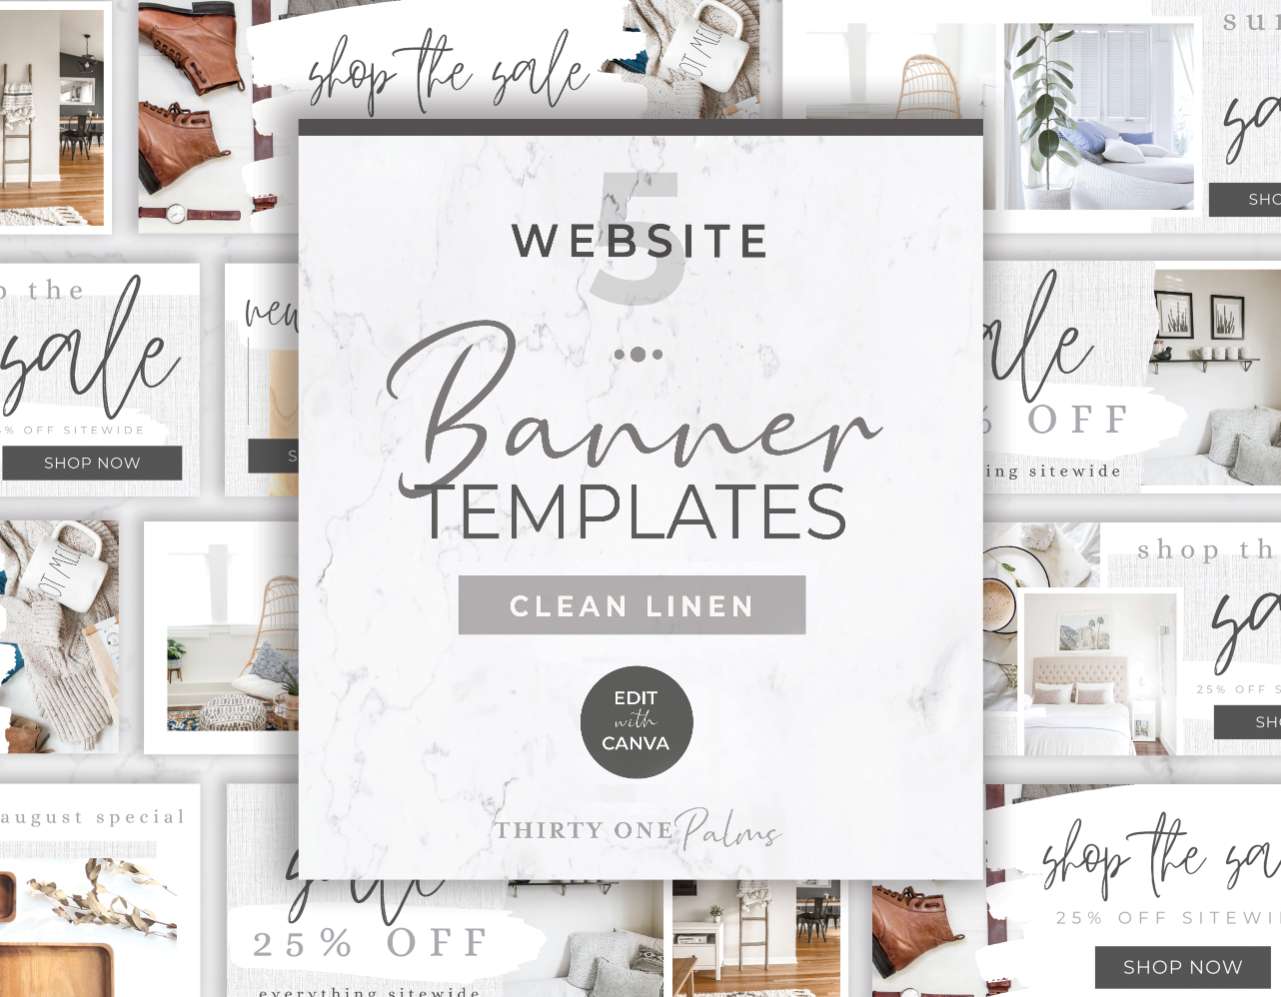 Website Banner Templates for Canva – White Linen